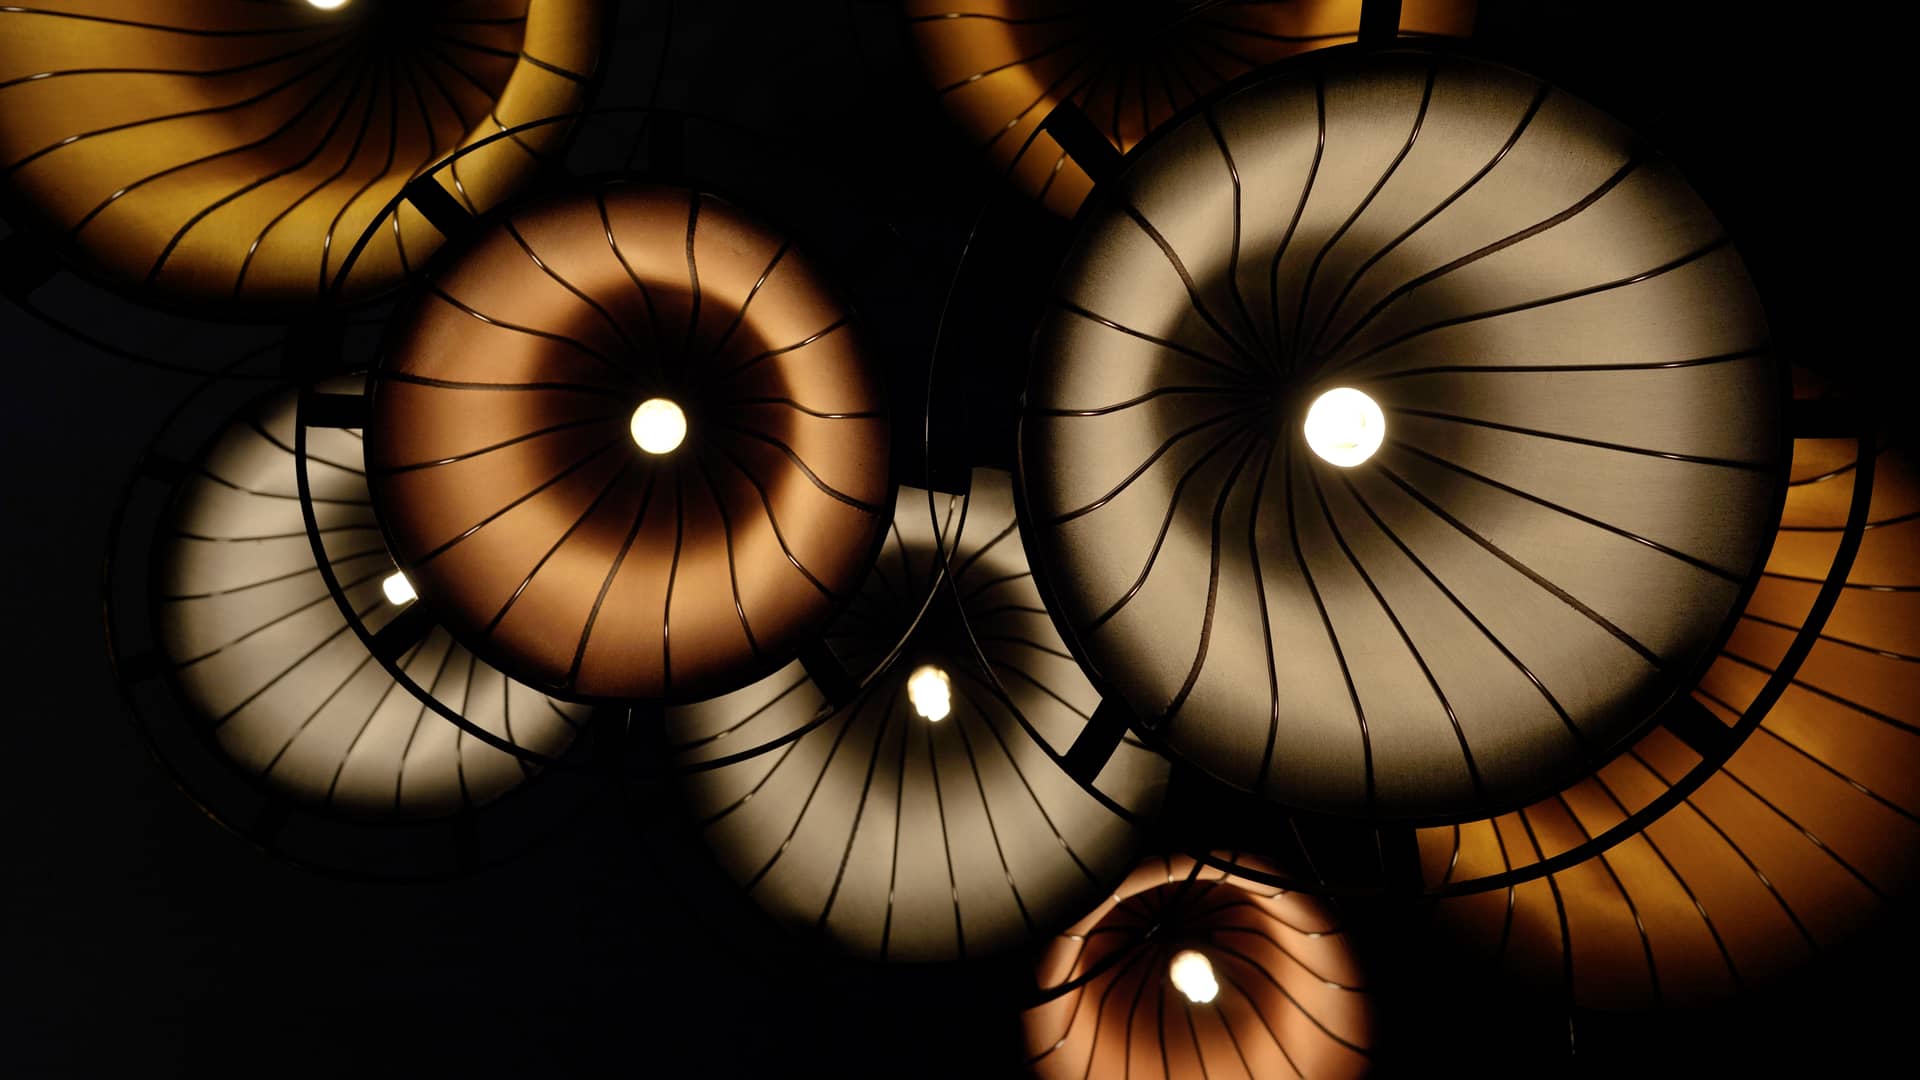 Vista inferior de un conjunto de lámparas con pantallas de colores cálidos, iluminadas gracias a una tarifa de luz de imagina energía